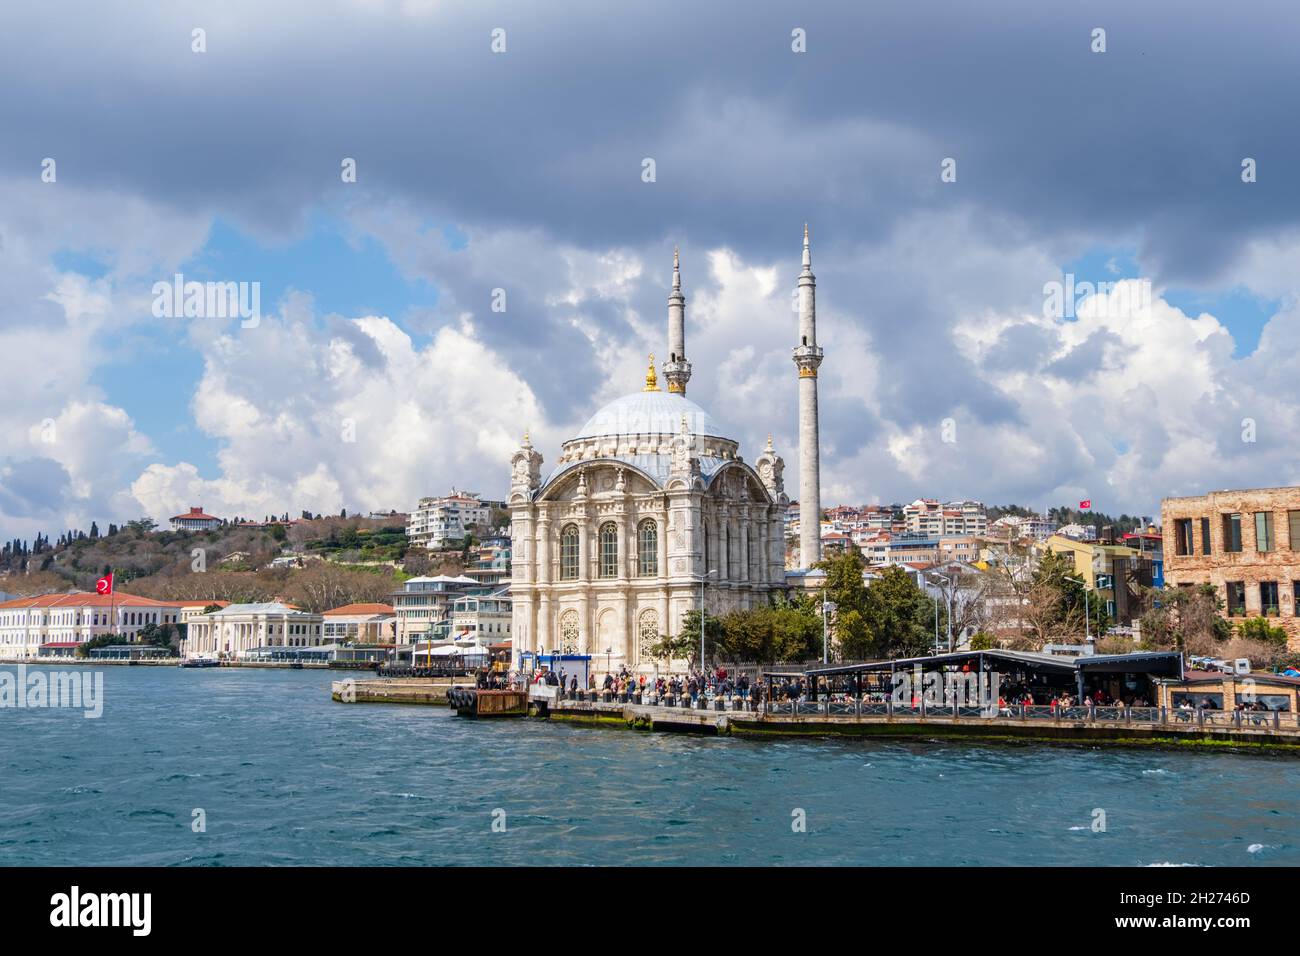 Mosquée Ortakoy sur la rive du Bosphore, Istanbul Turquie Banque D'Images